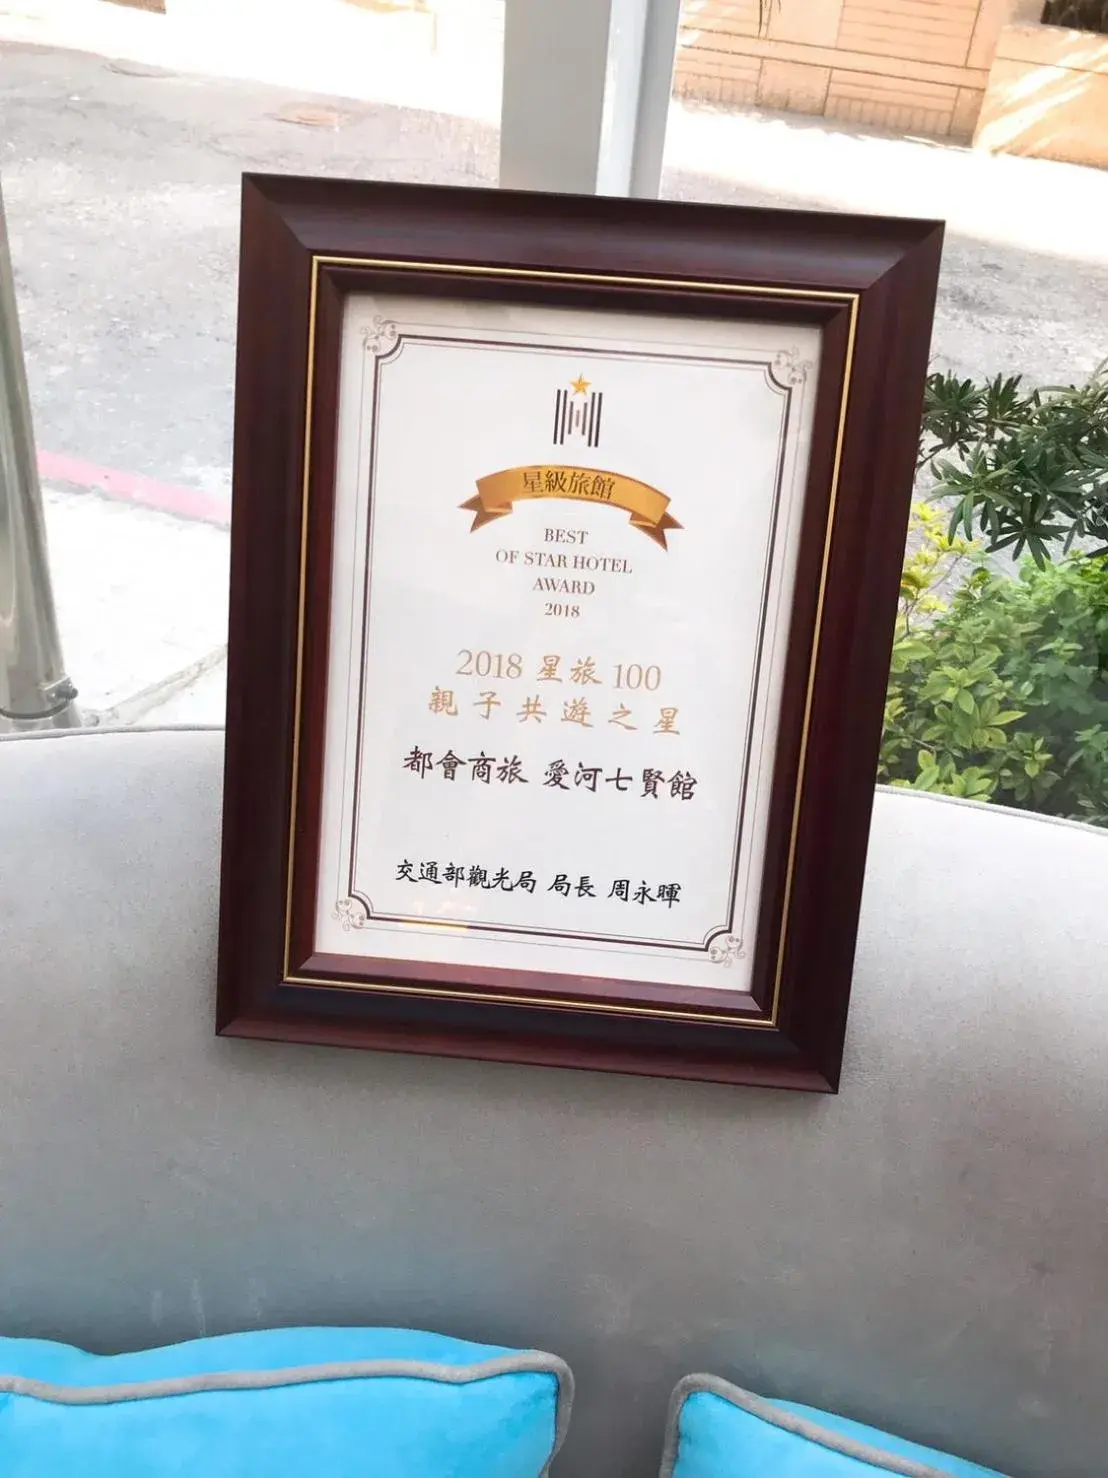 Certificate/Award in M Hotel